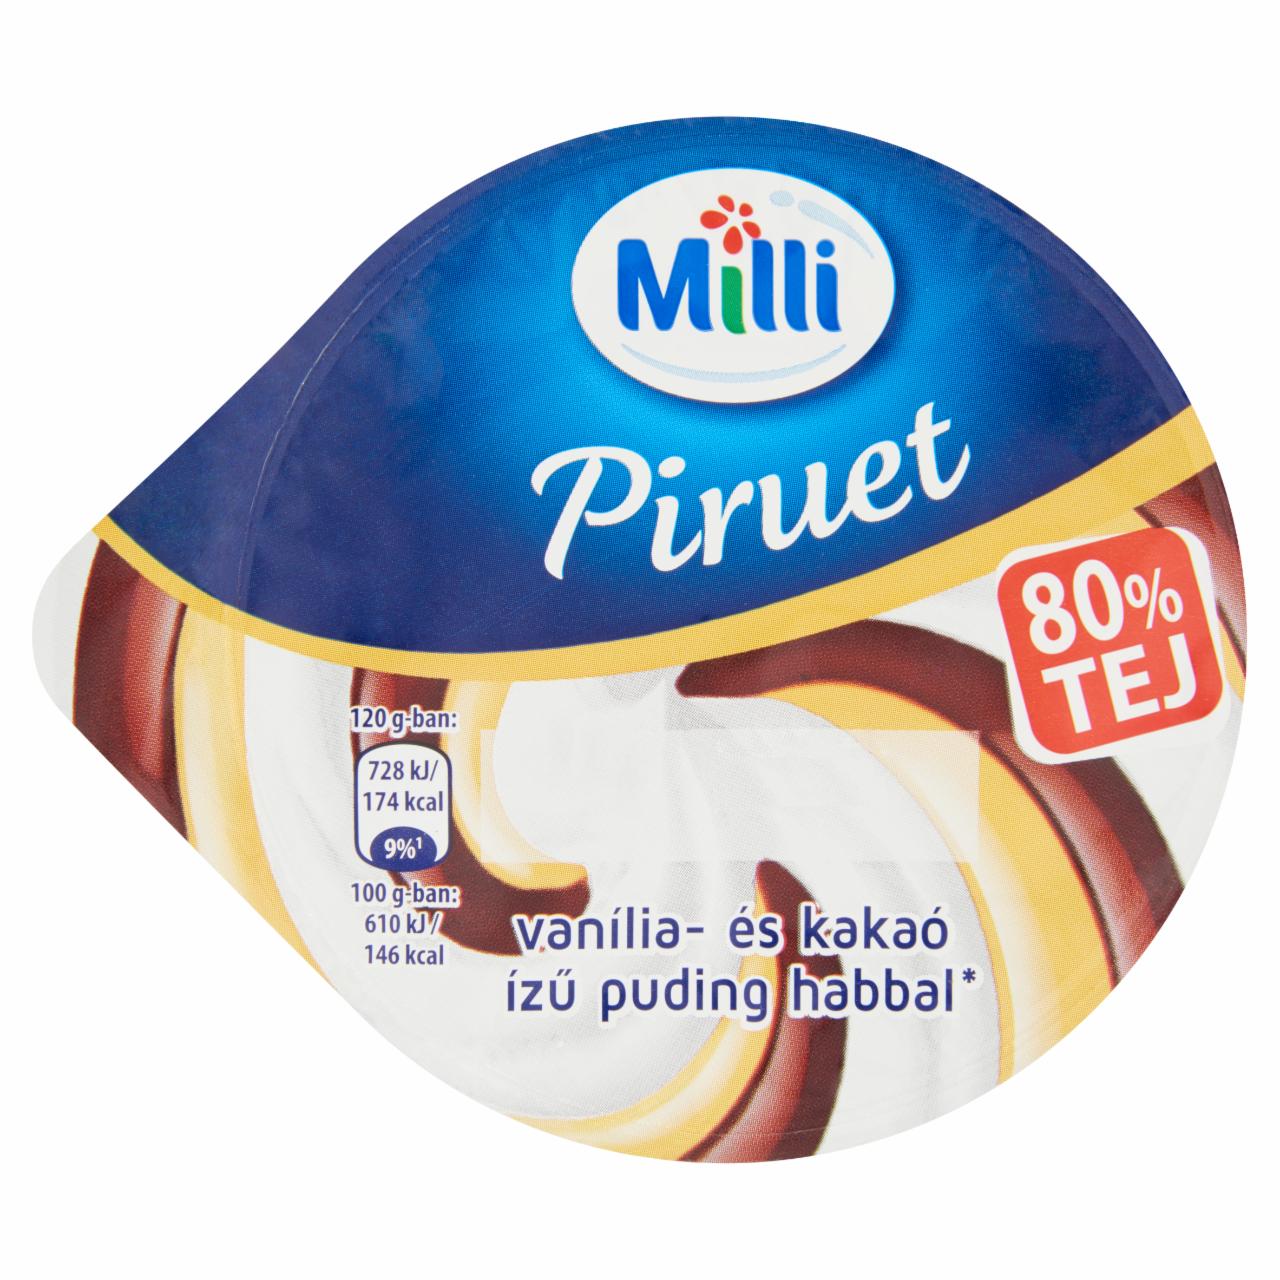 Képek - Milli Piruet vanília- és kakaó ízű puding habbal 120 g